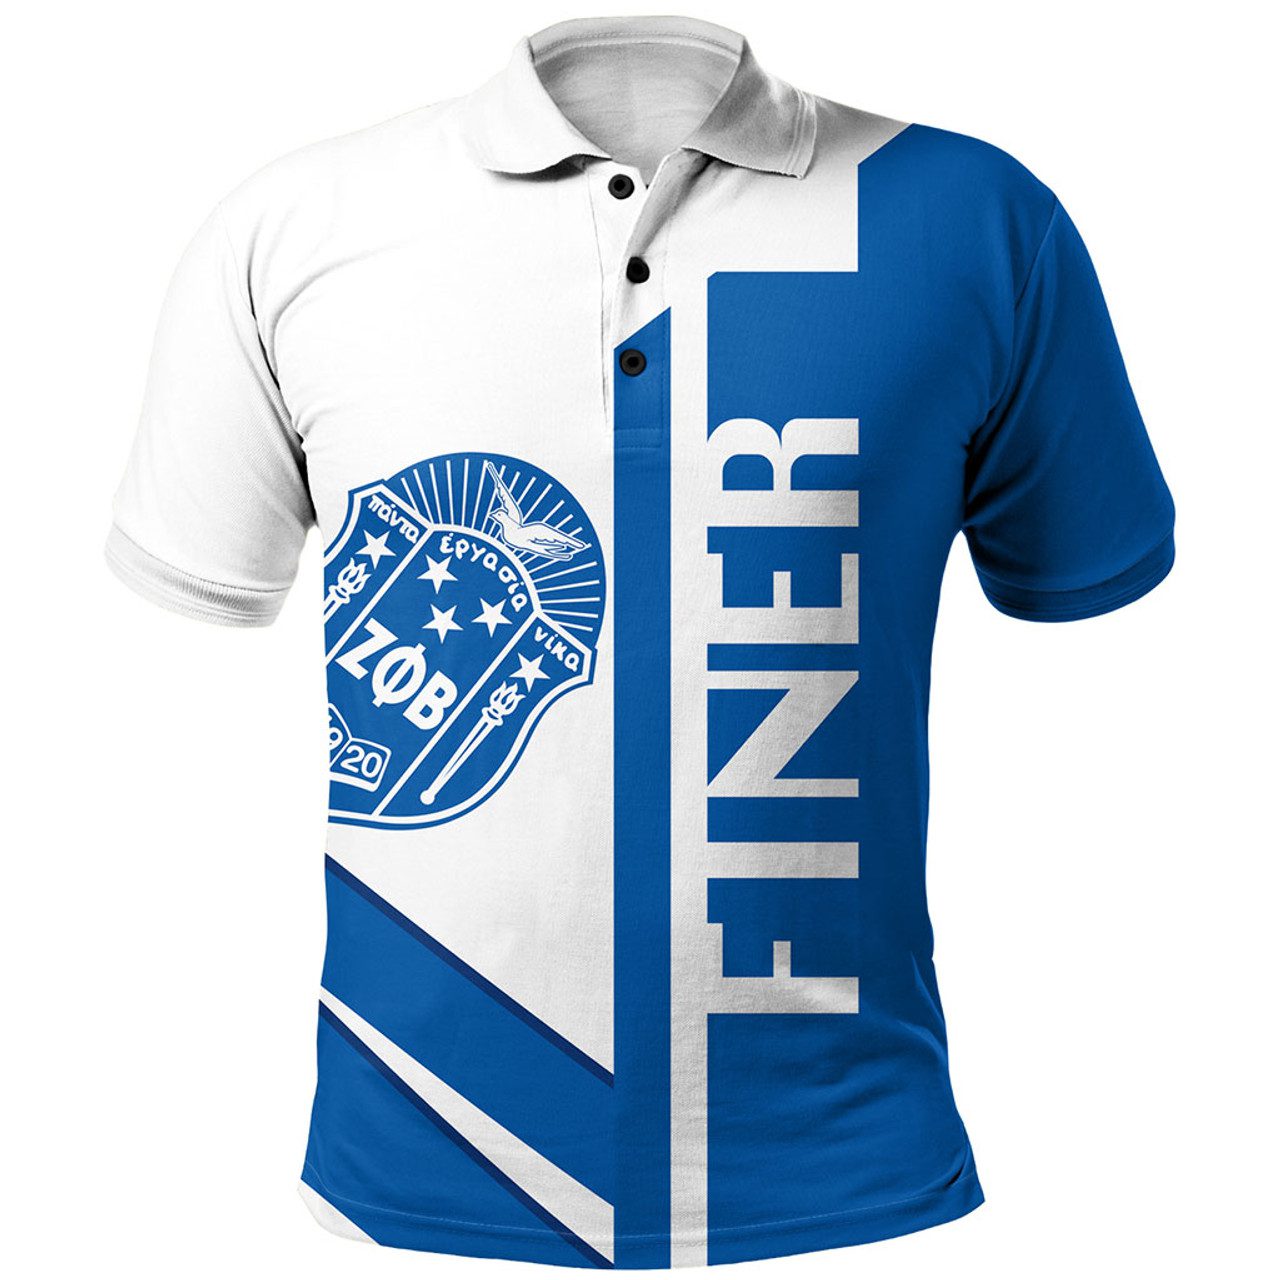 Zeta Phi Beta Polo Shirt Half Concept